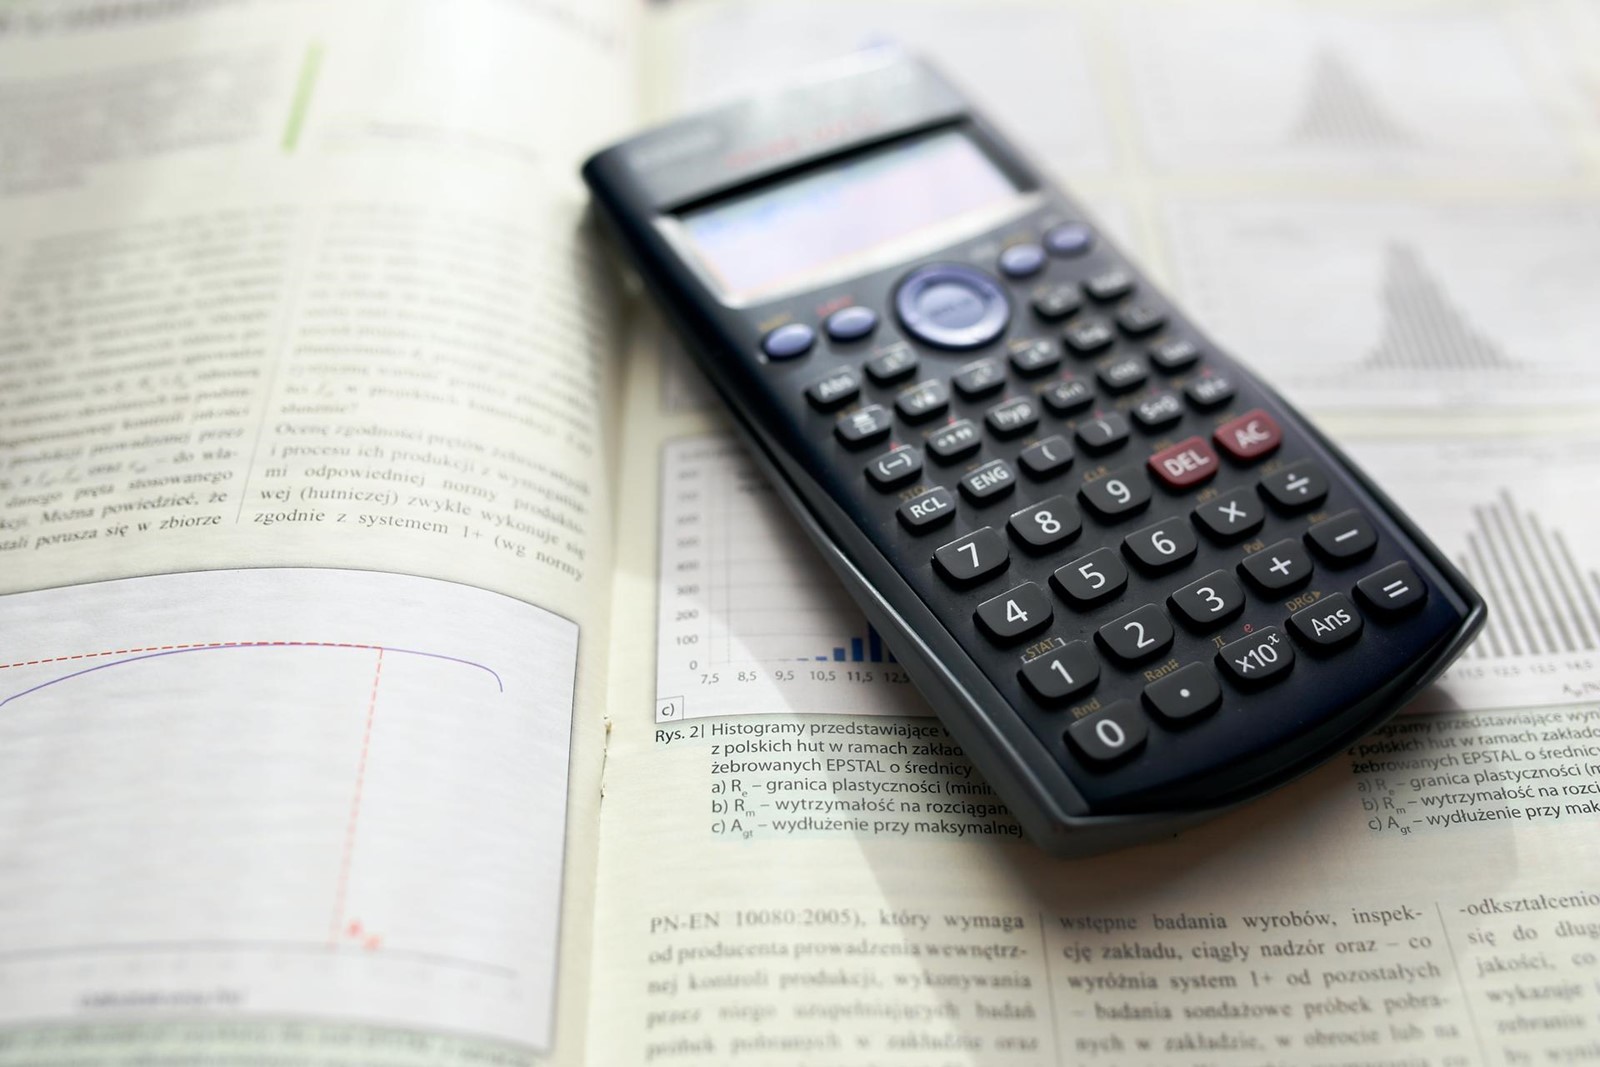 ClevCalc - znanstveni kalkulator koji nudi i brojne dodatne ugrađene  kalkulatore - App dana @ Bug.hr